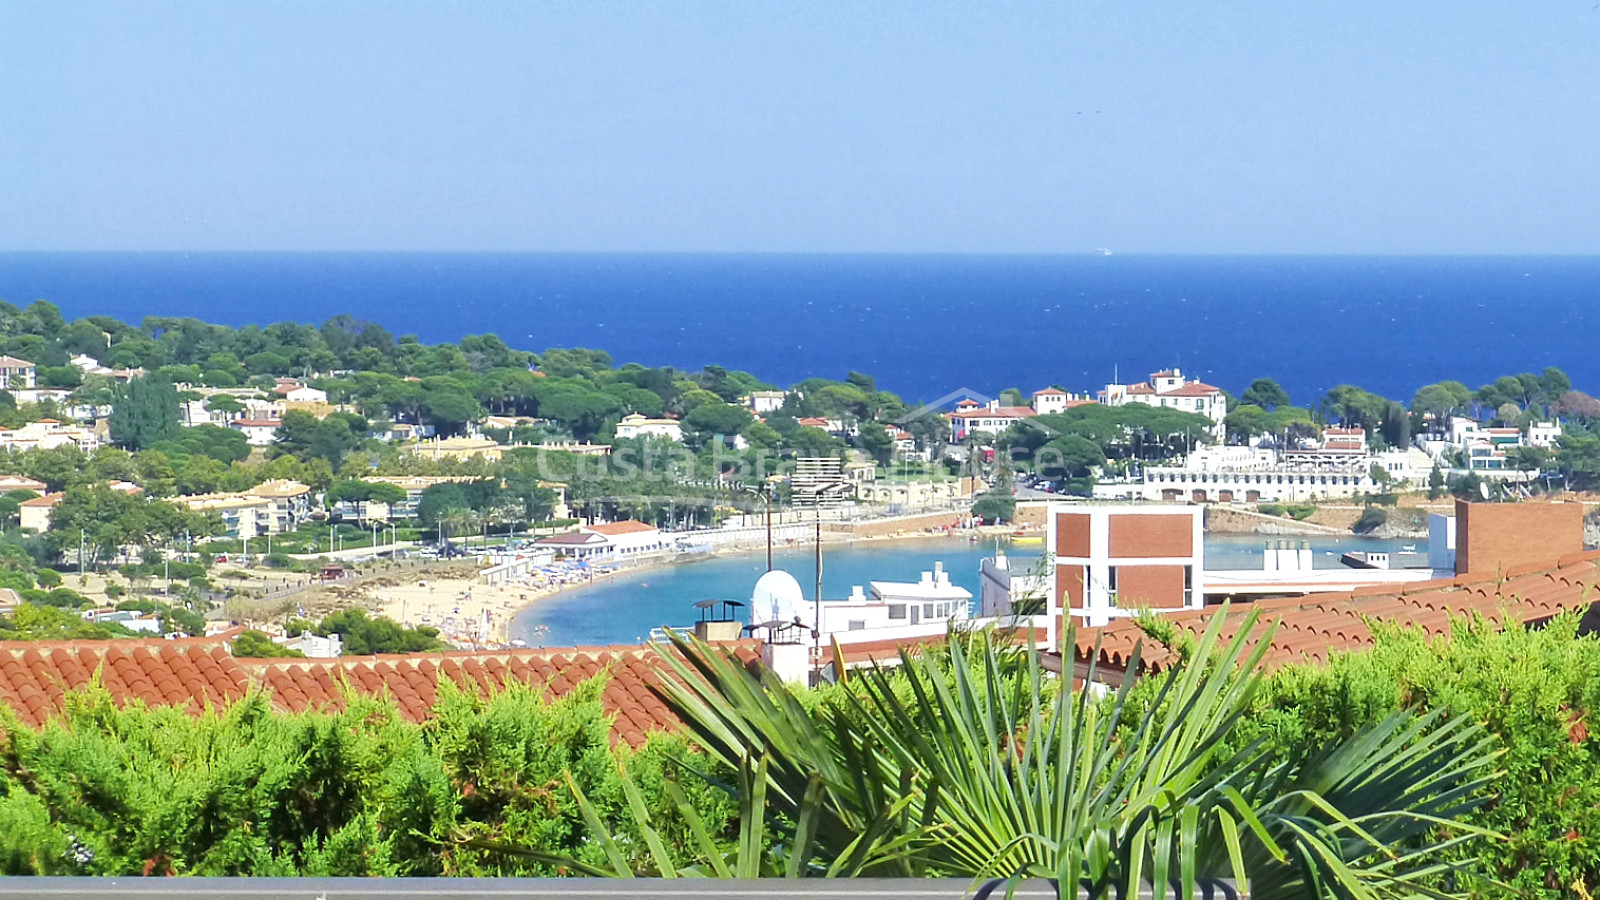 Casa amb piscina i vistes al mar en venda a S'Agaró